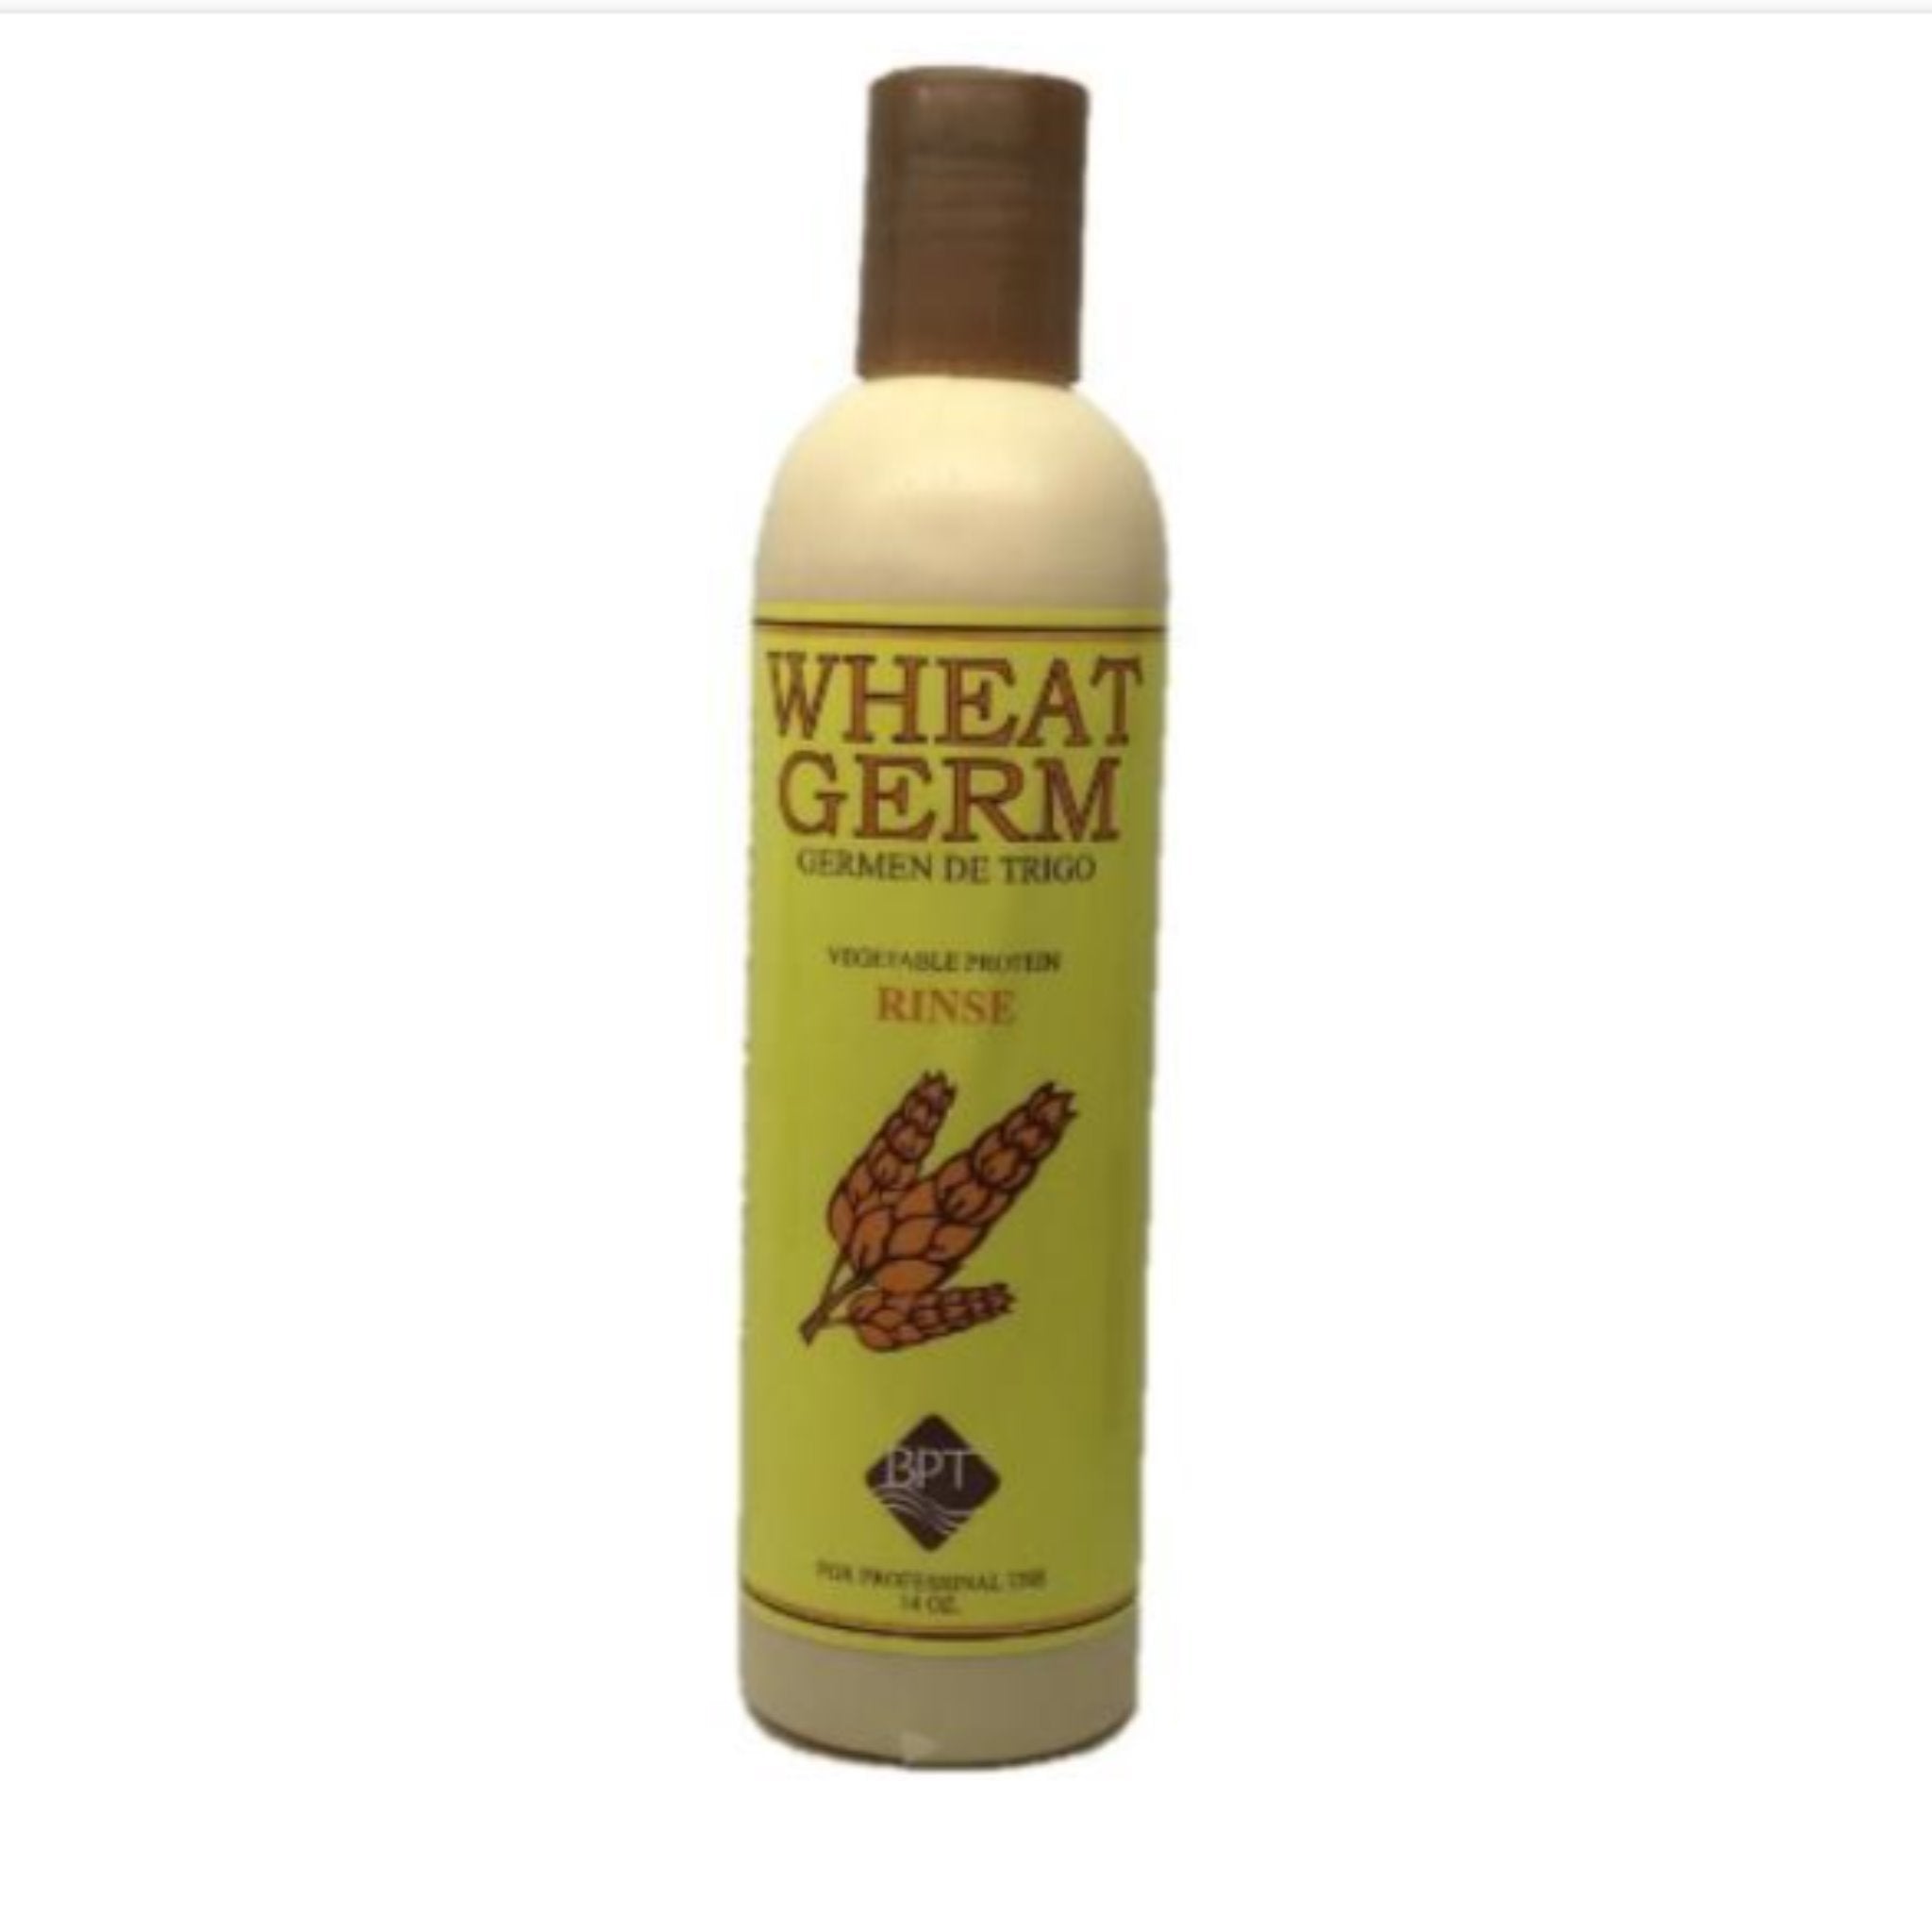 Lafier BPT Wheat Germ Rinse 14 oz